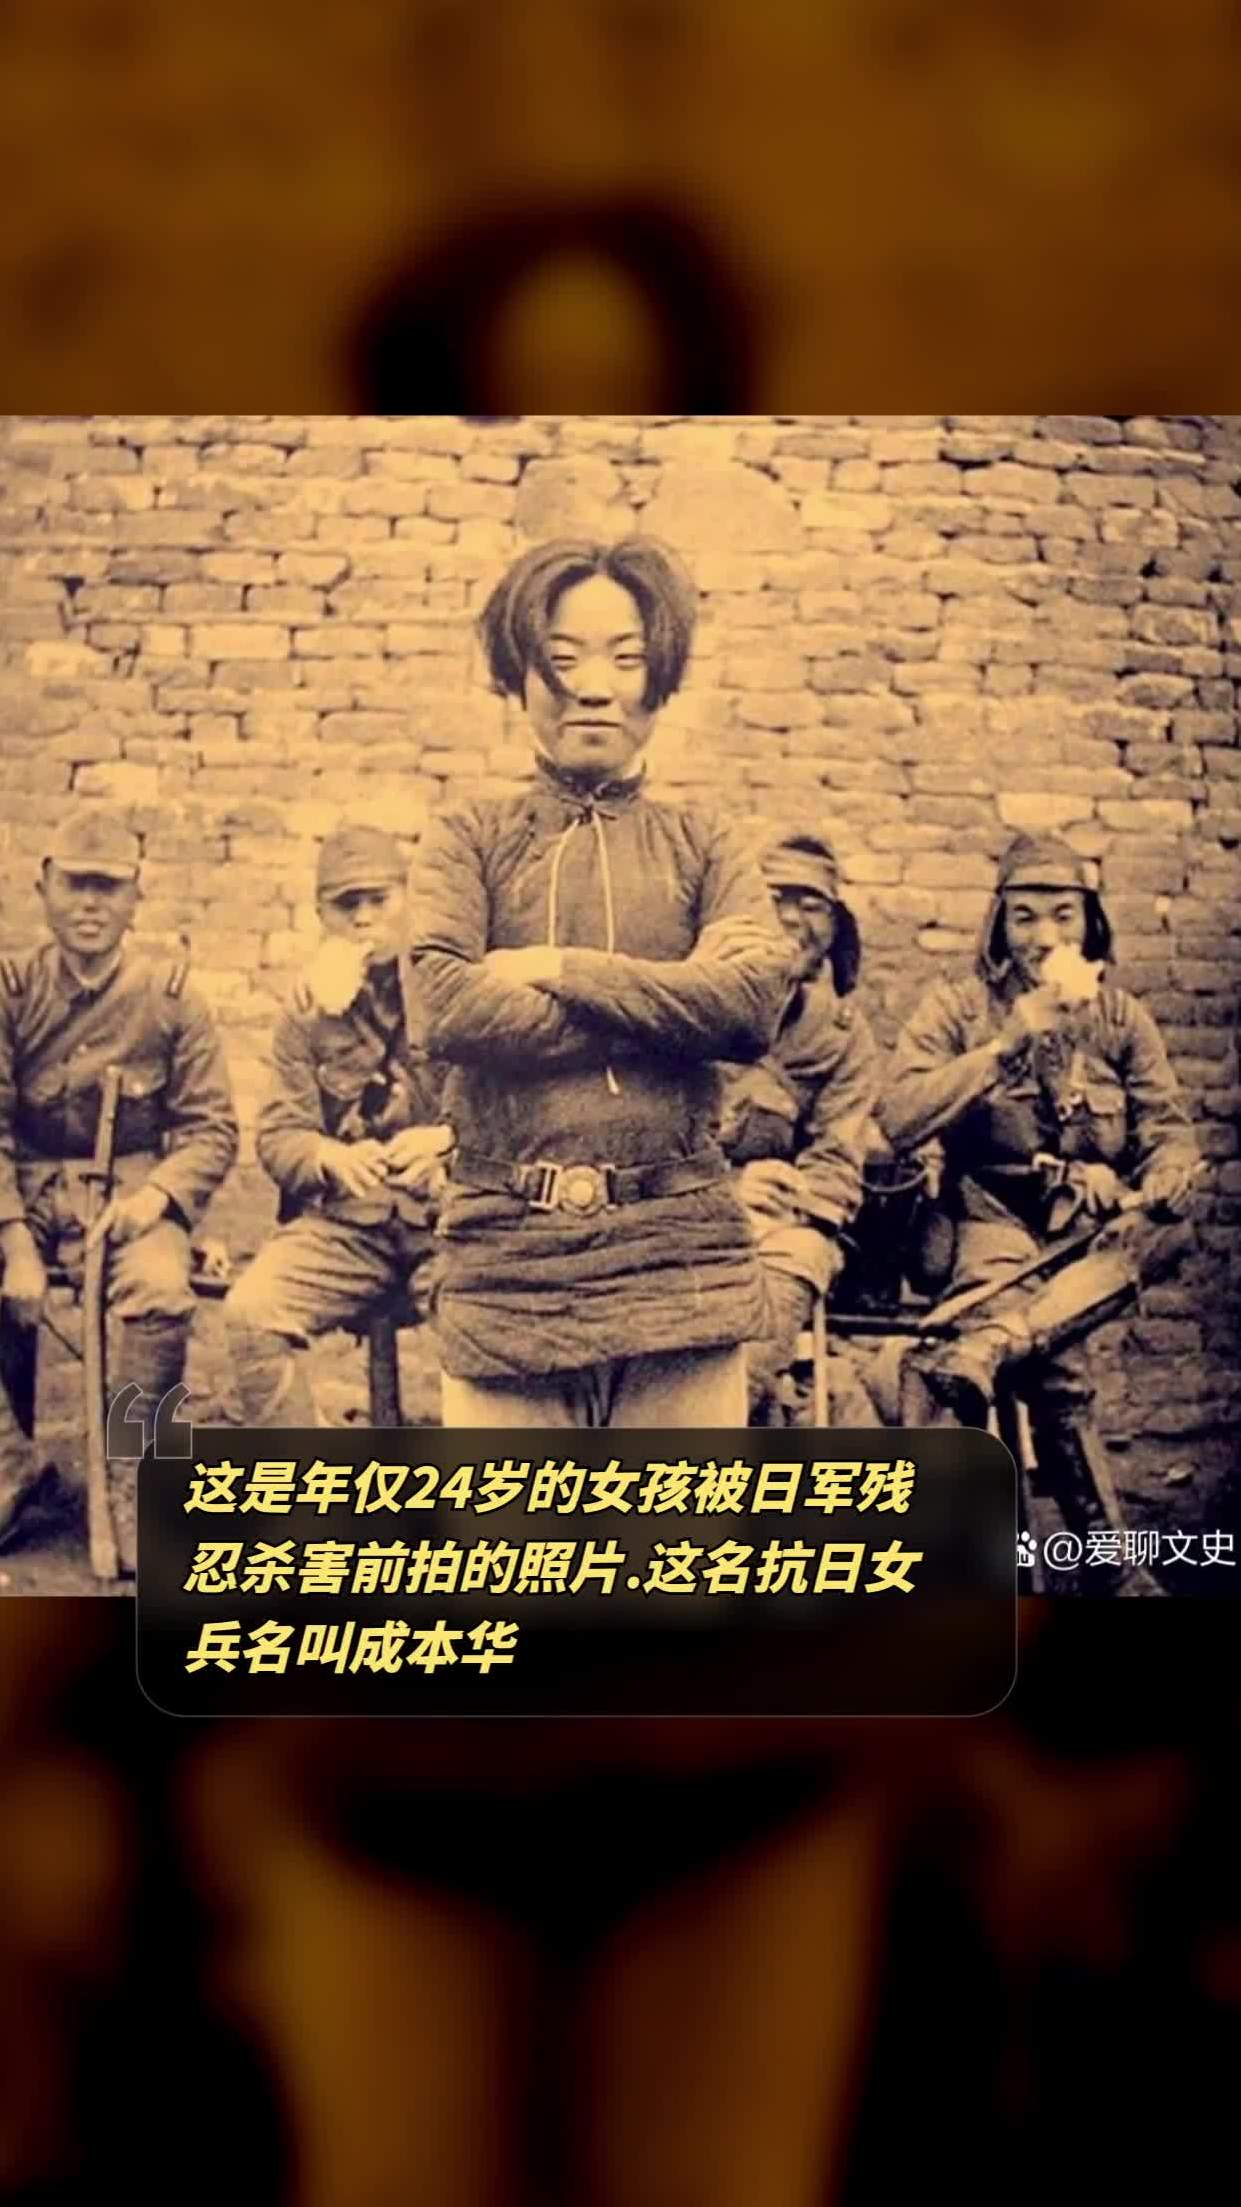 这名抗日女兵名叫成本华,她出生于1914年,照片里她站在一群日本鬼子兵